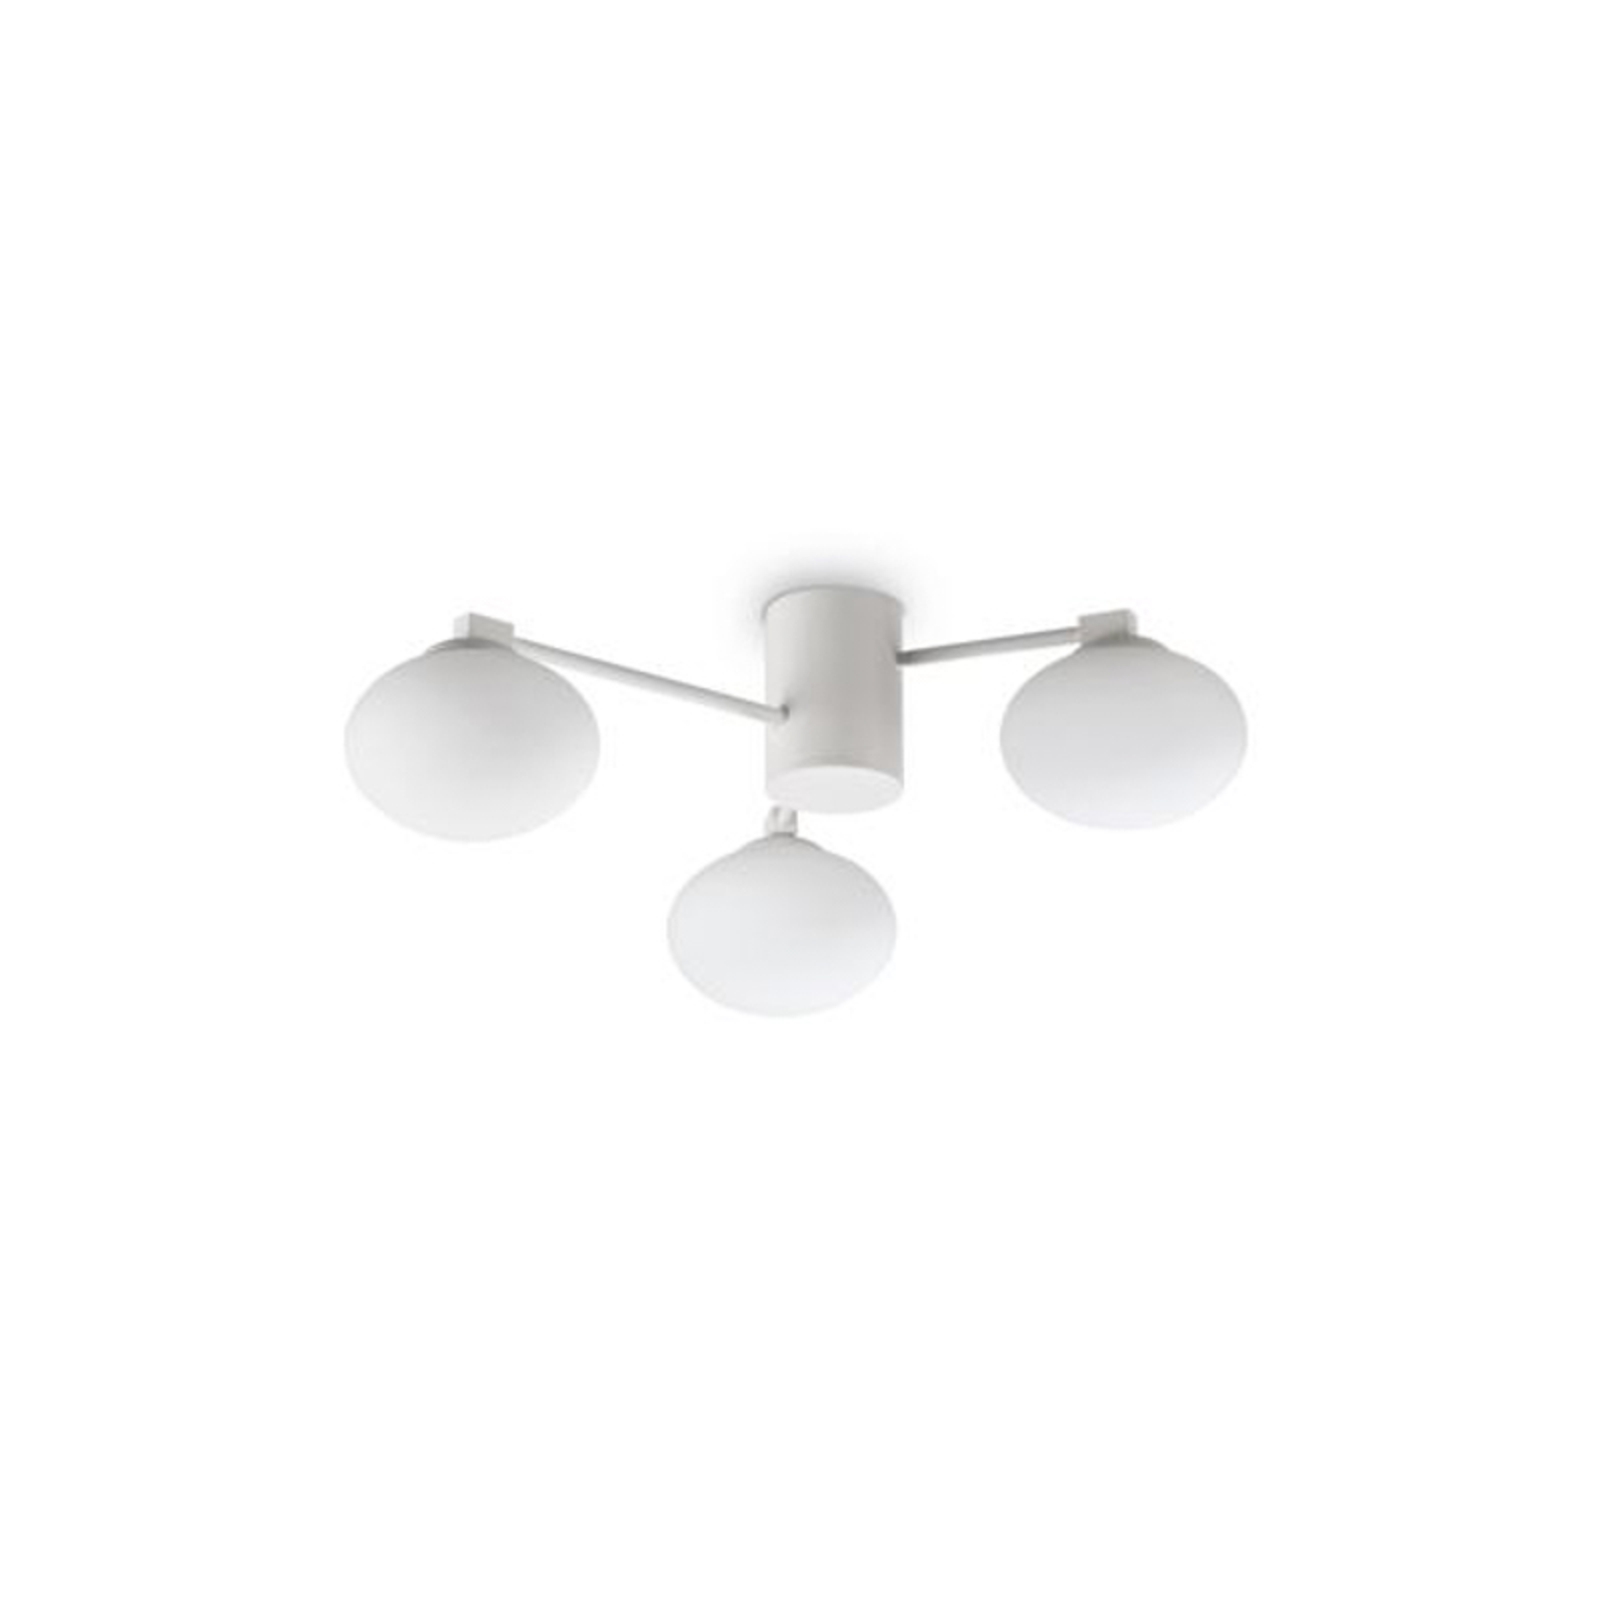 Ideal Lux Hermes ceiling light, white, 60 cm, 3-bulb, glass